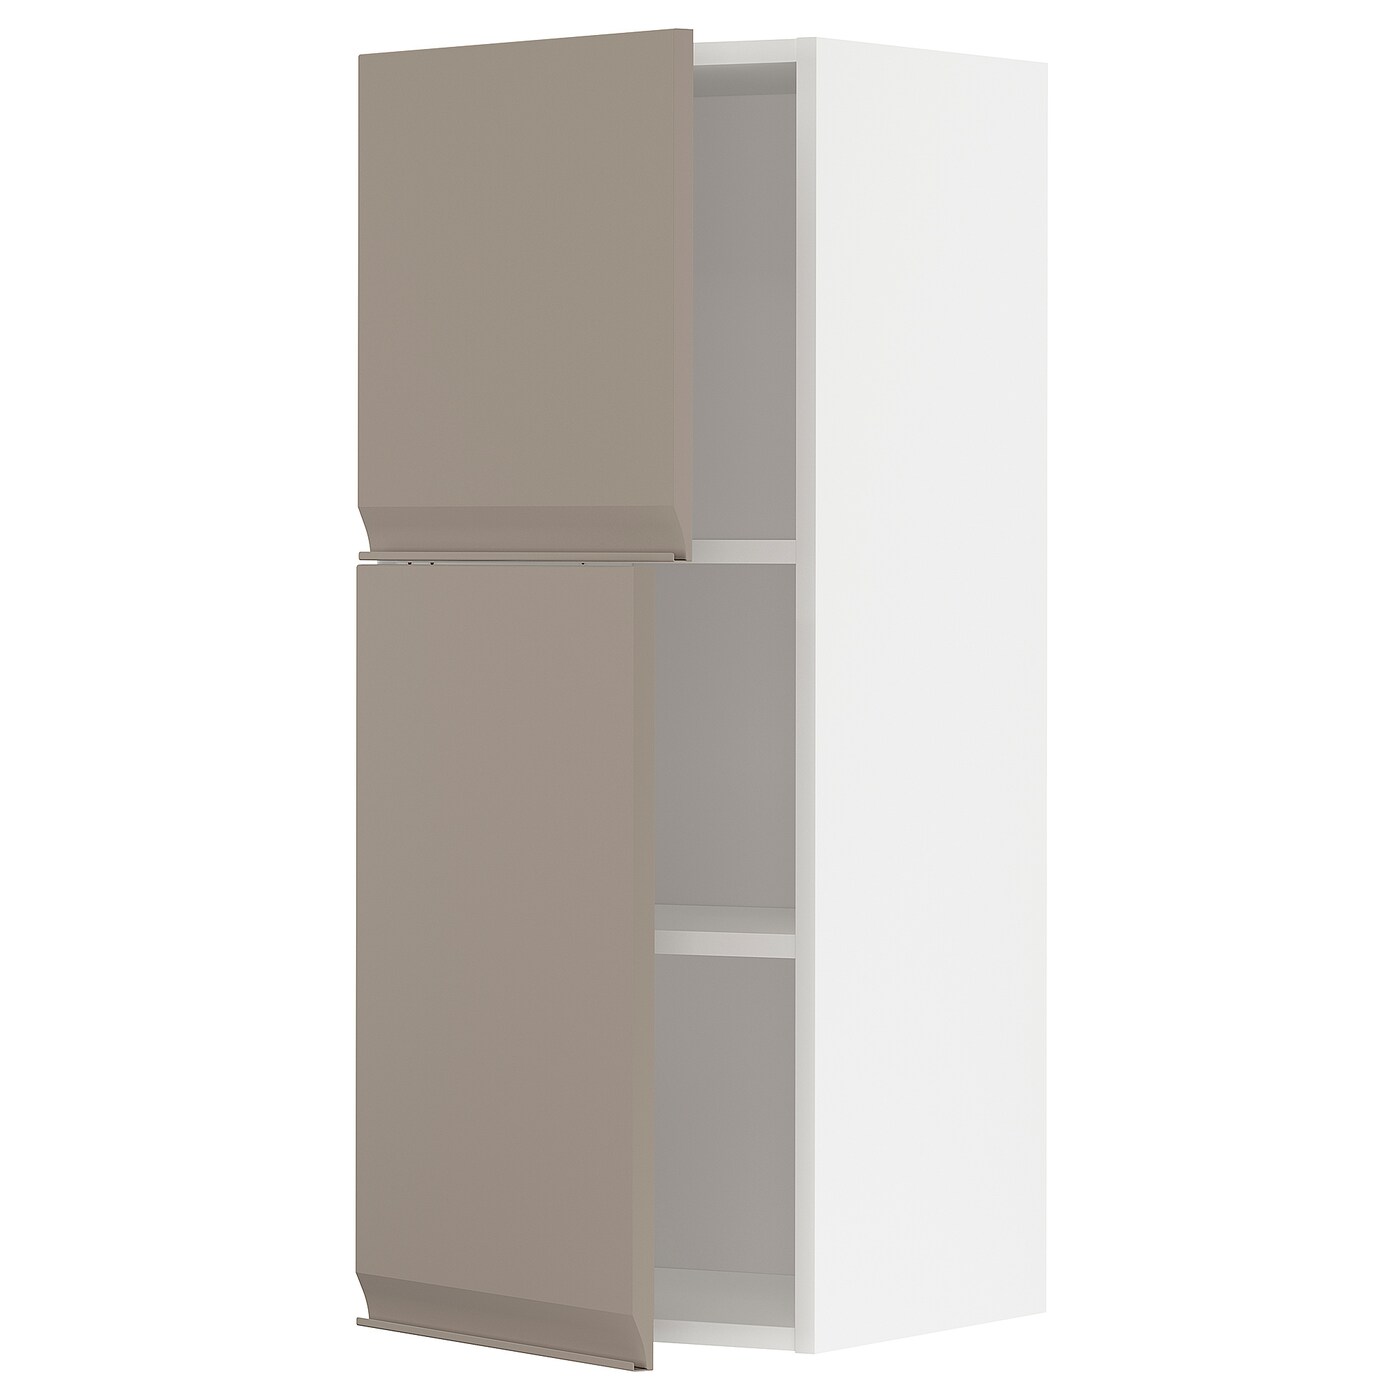 Навесной шкаф с полкой - METOD IKEA/ МЕТОД ИКЕА, 100х40 см, белый/светло-коричневый